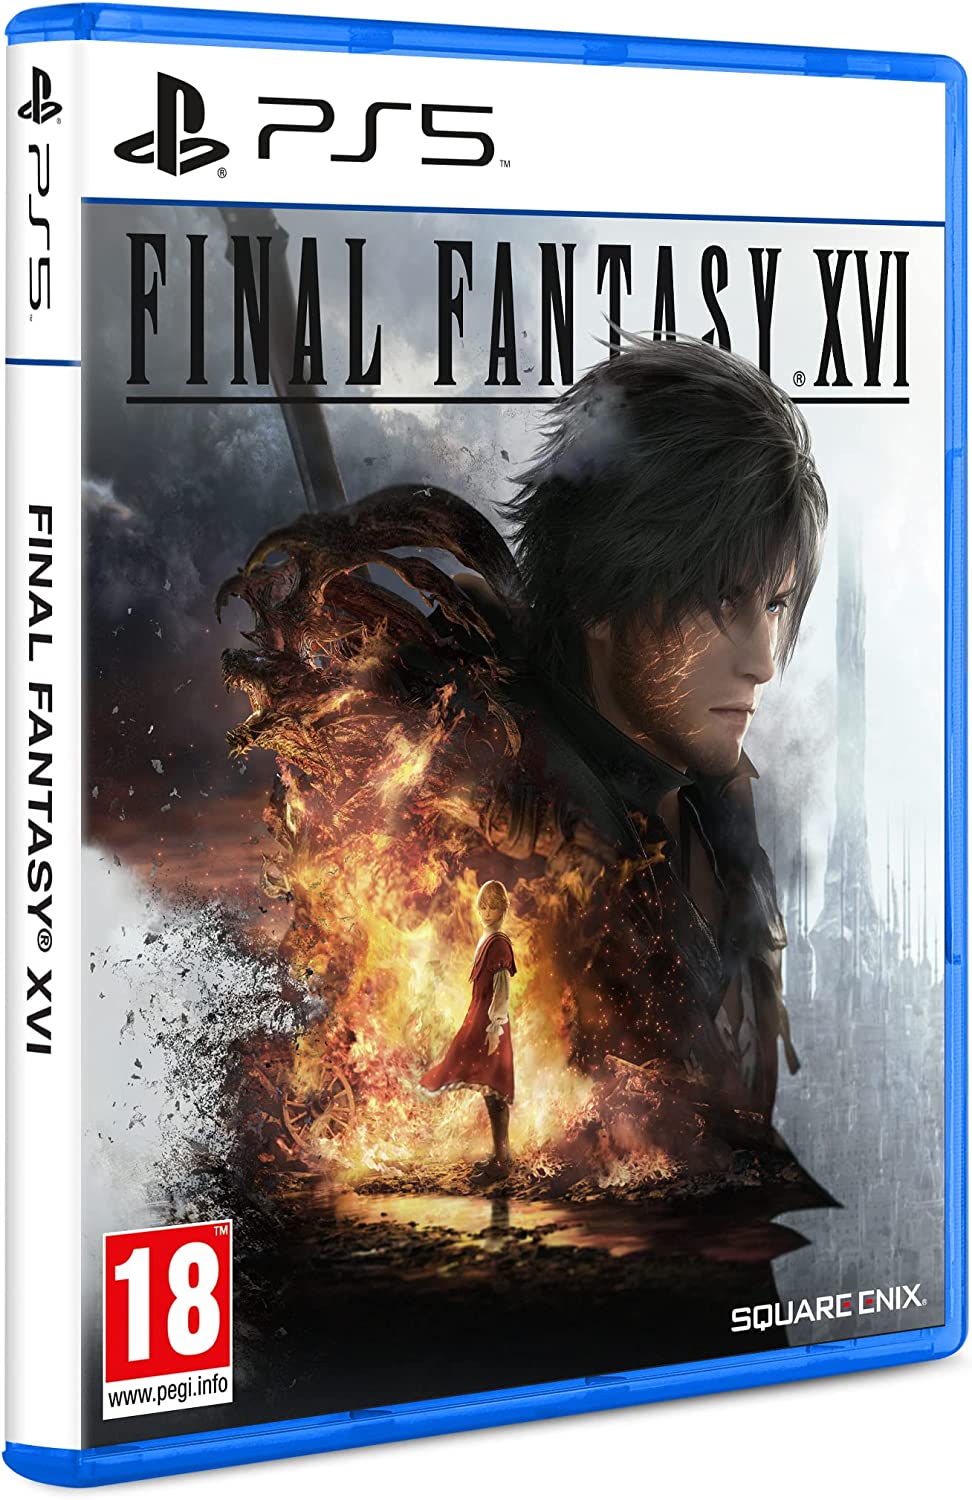 PS5 Final Fantasy XVI - Data di uscita: 22-06-2023 Square Enix